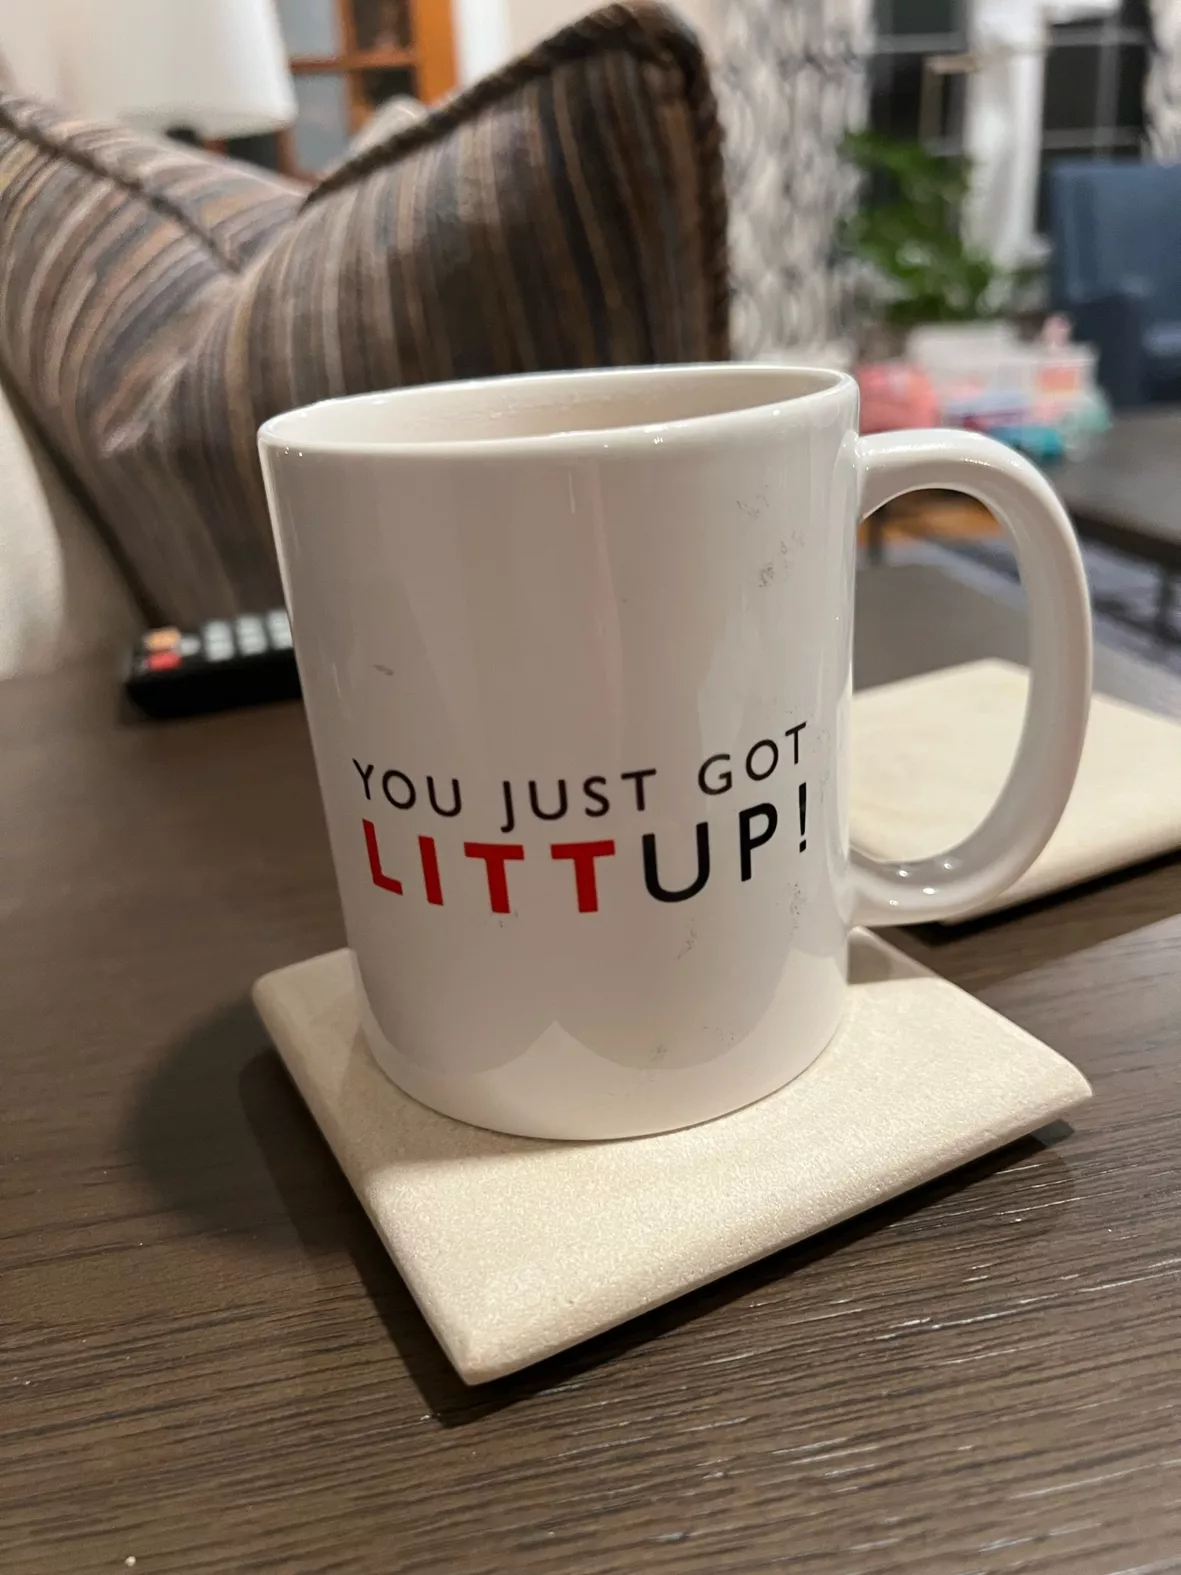 You Just Got Litt Up! Mug from Suits